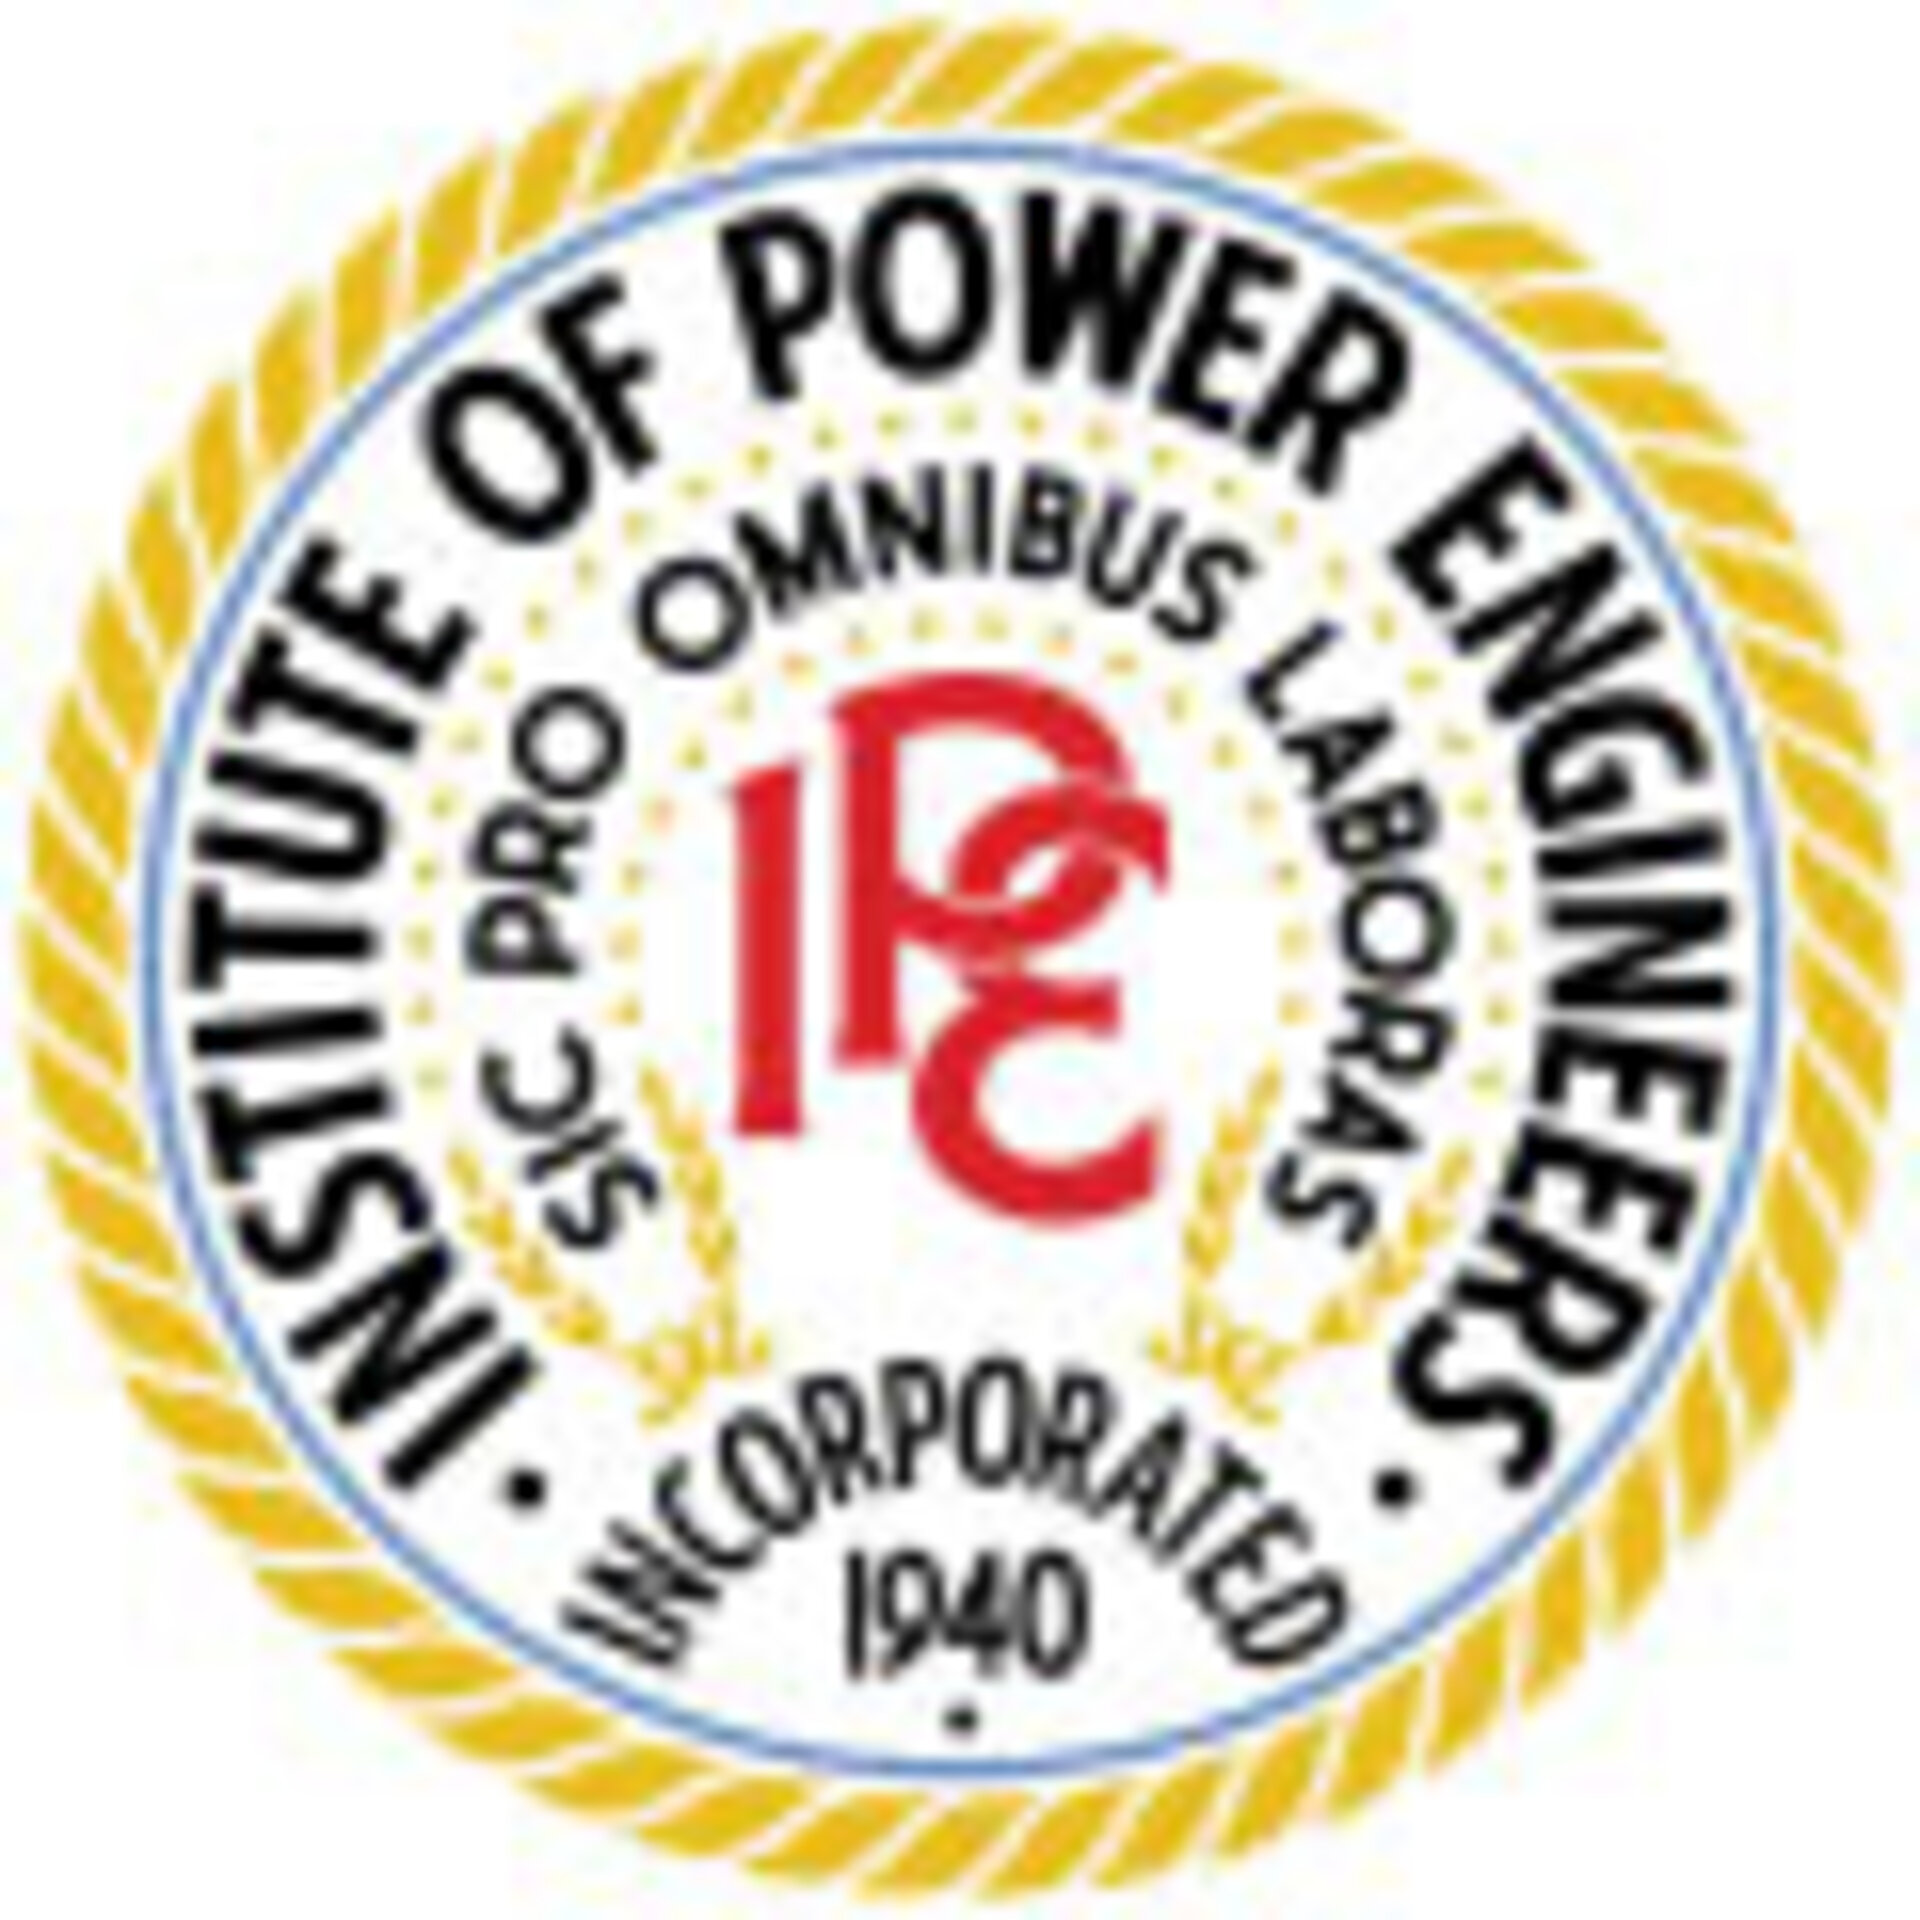 Institute of Power Engineers